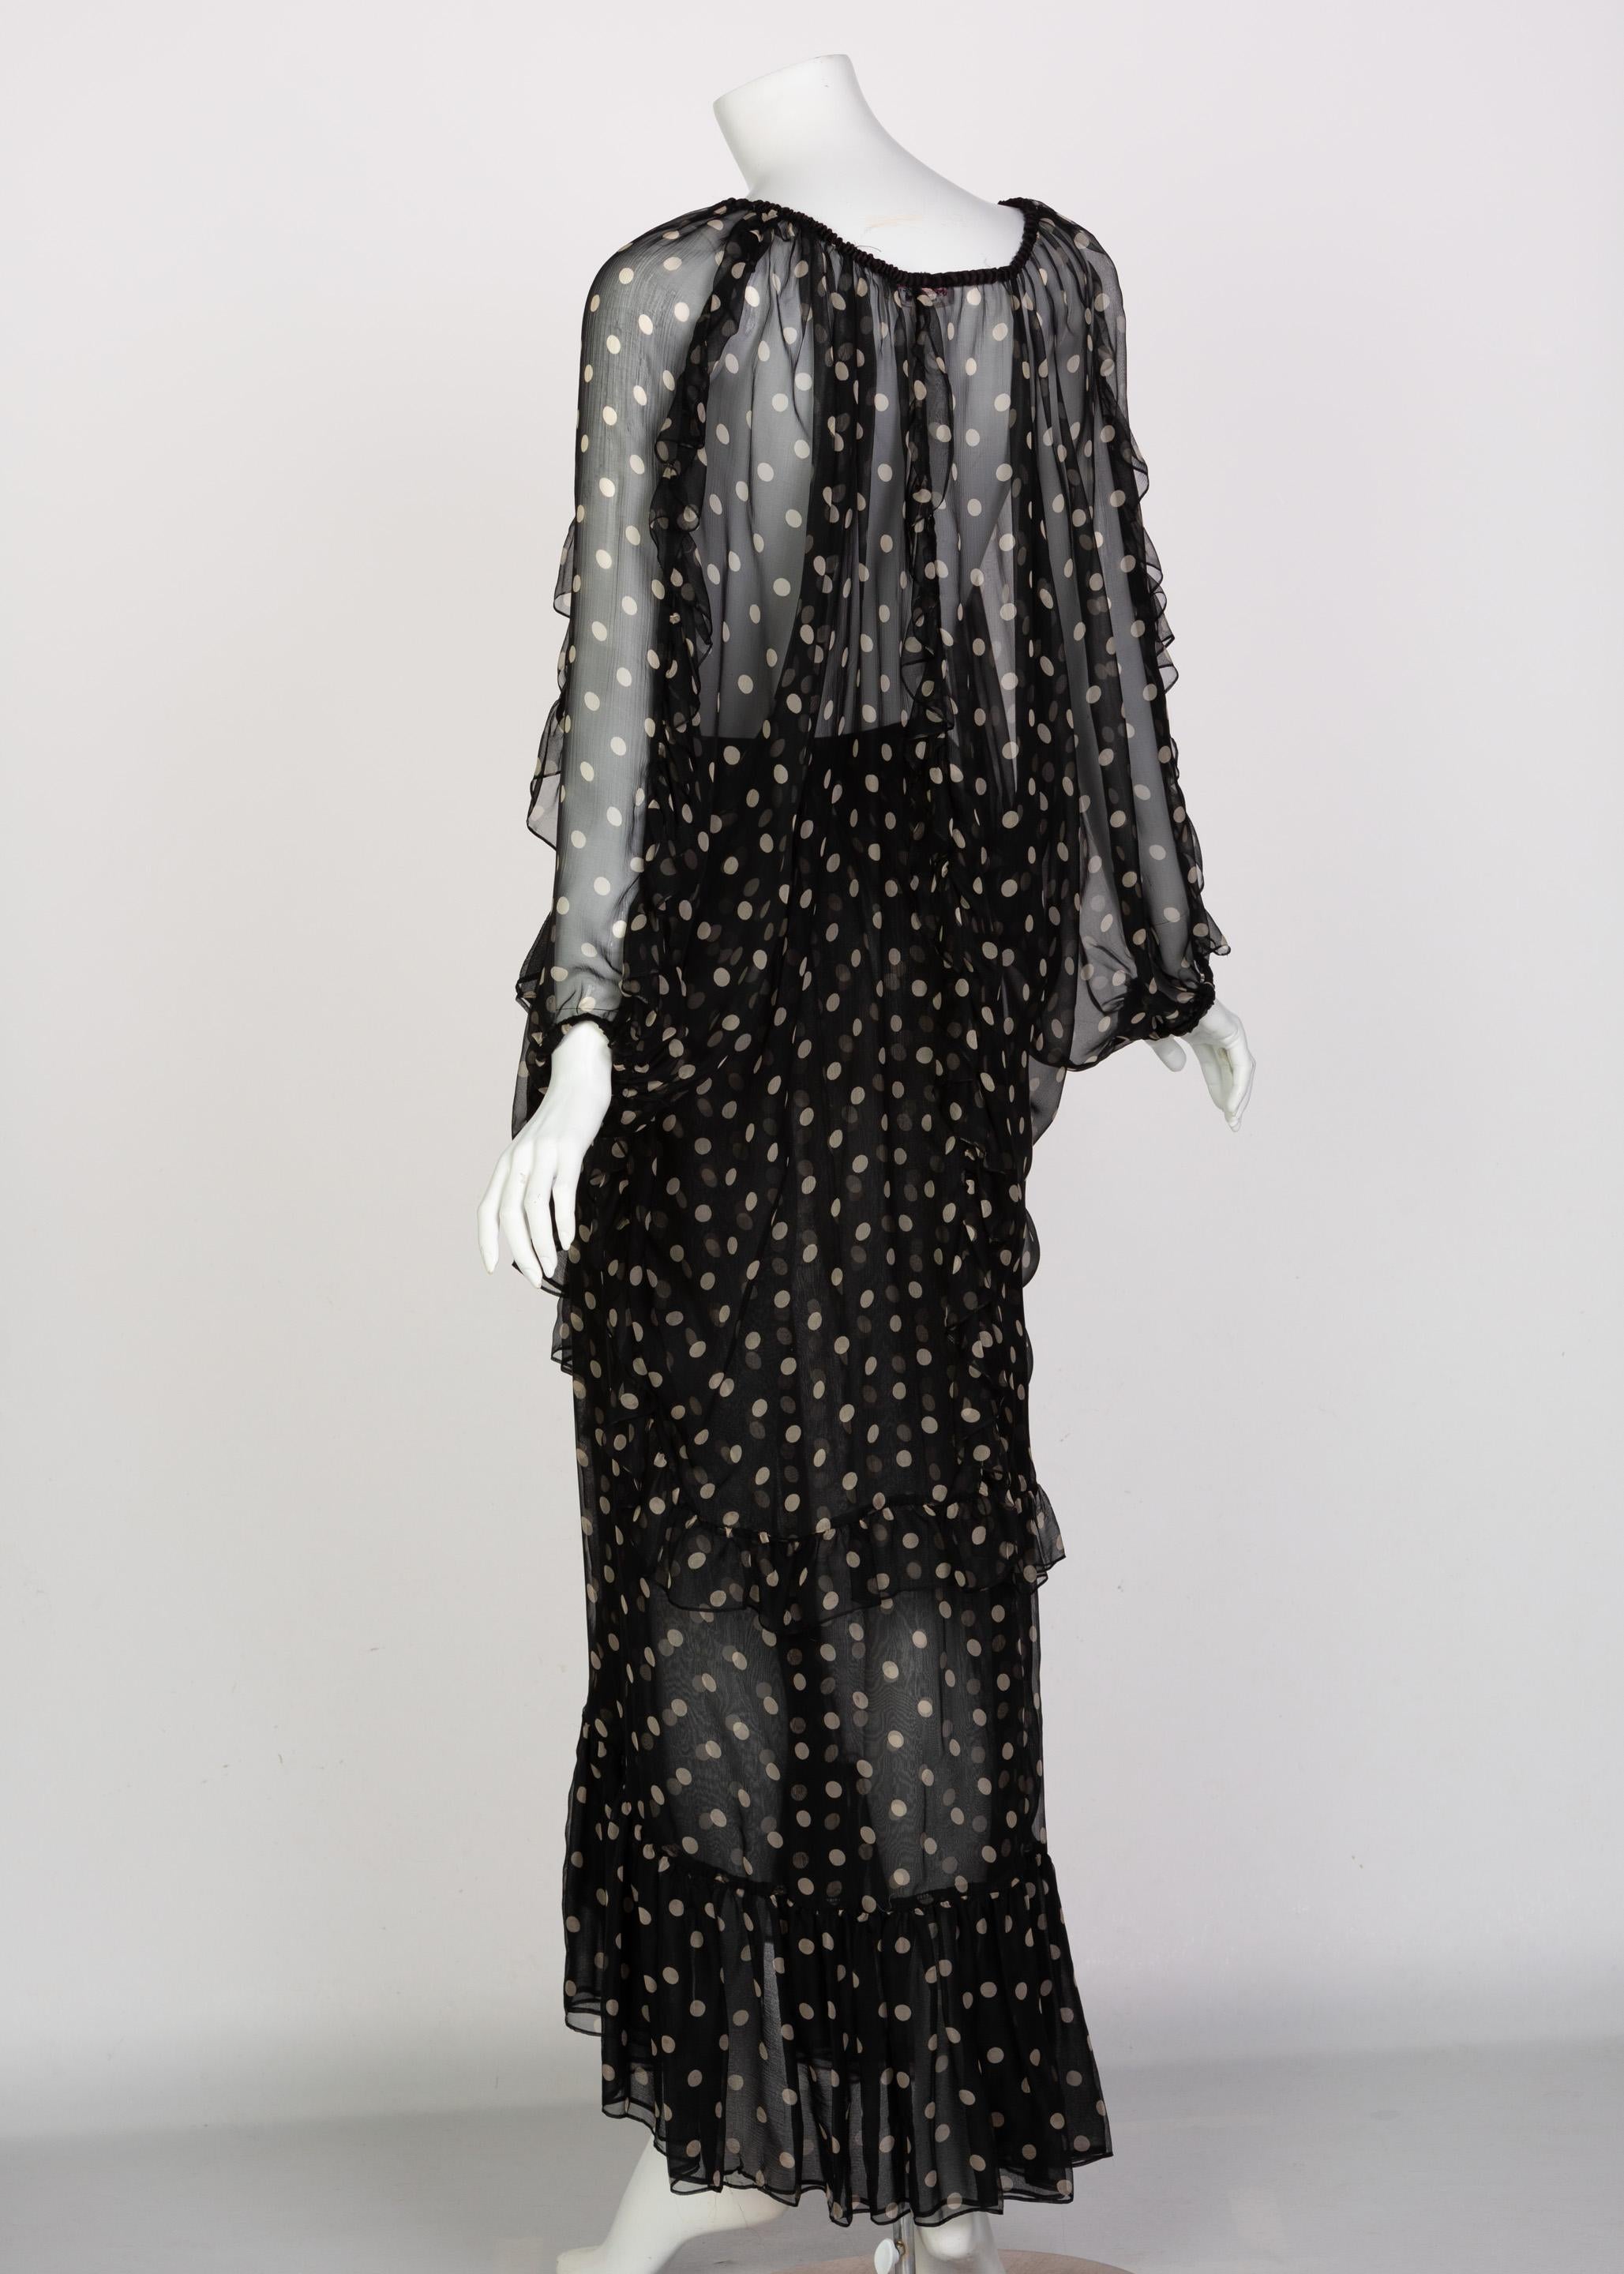  Yves Saint Laurent Black Beige Polka Dot Ruffle Jacket Top Skirt Set YSL 1980s 1